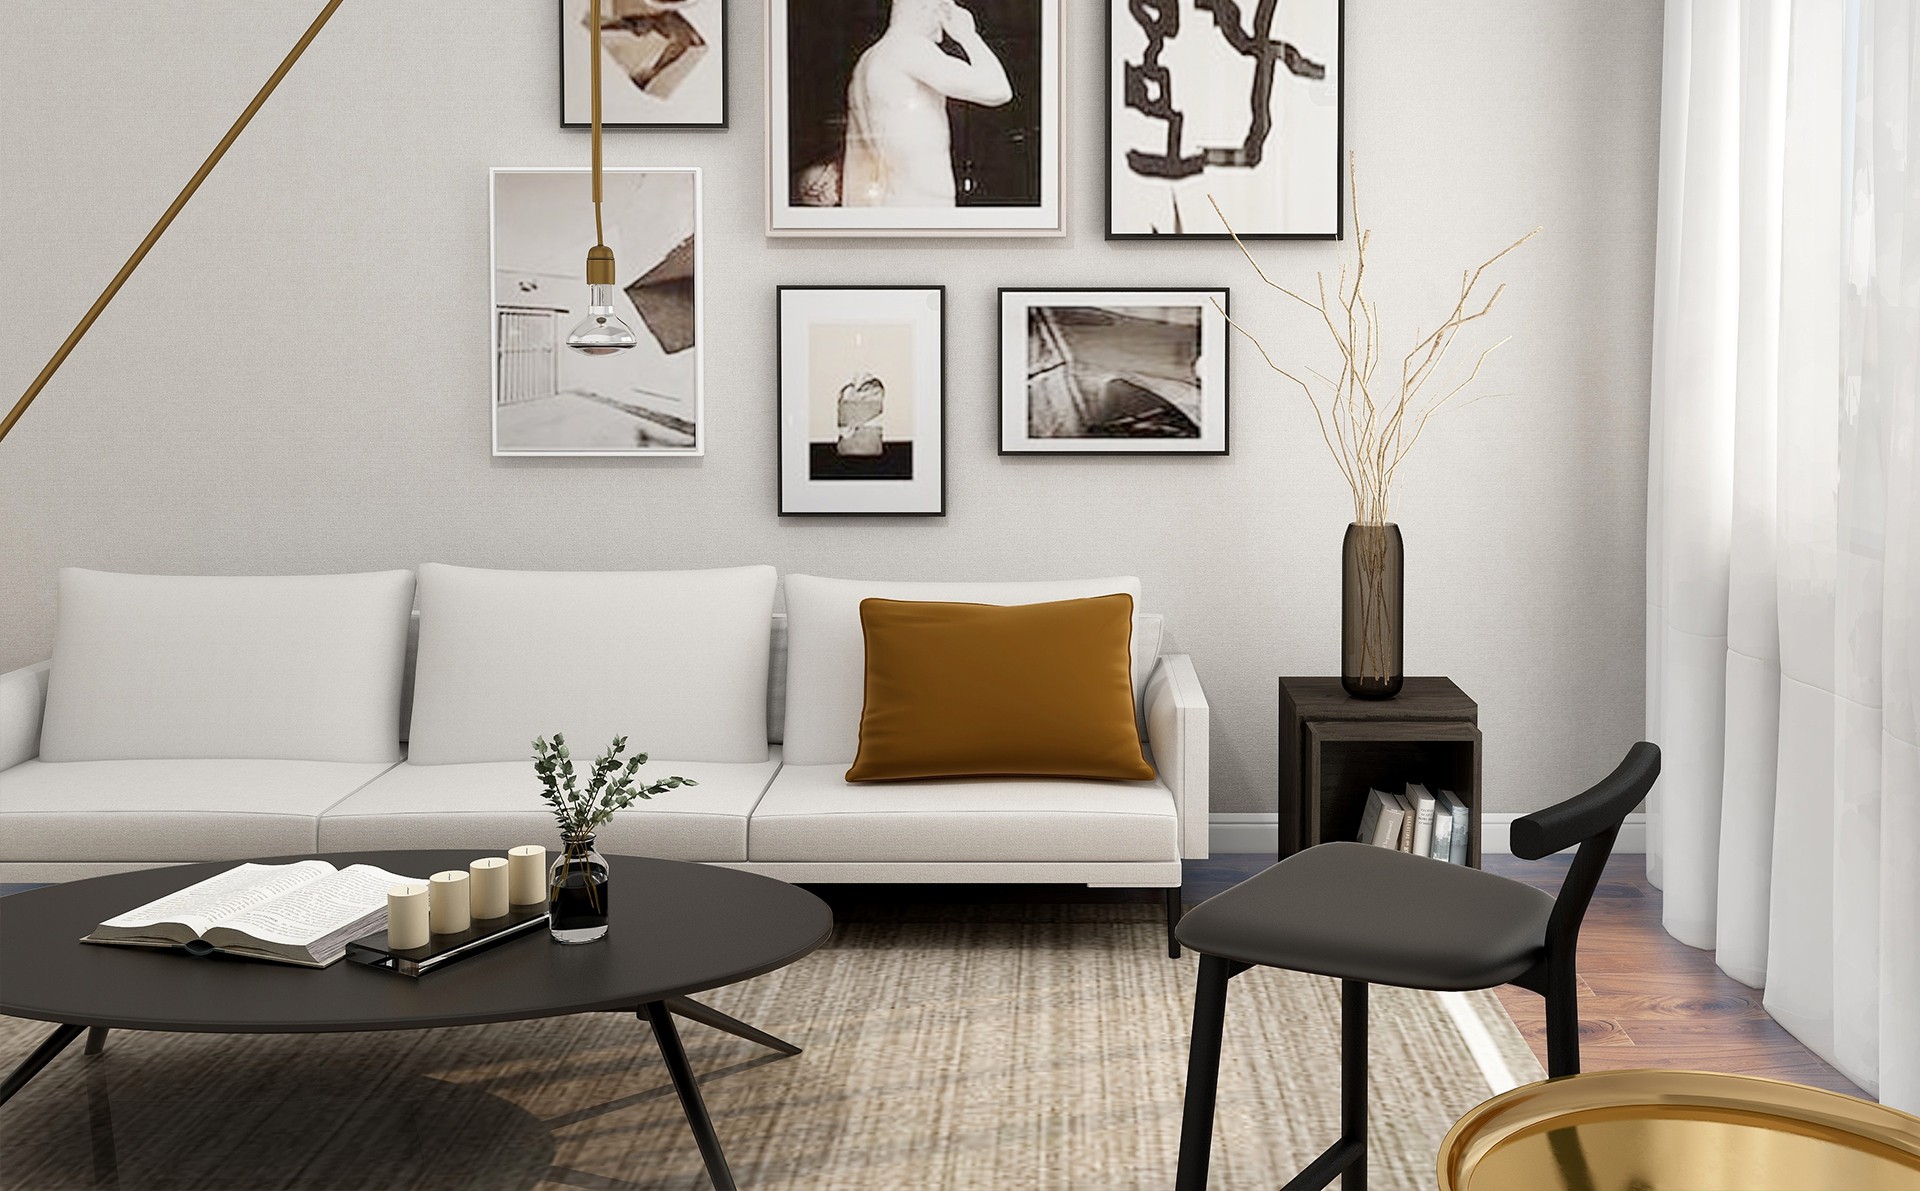 Salon w stylu skandynawskim z jasną kanapą i galerią obrazów na ścianie Home Staging oferta dla inwestorów